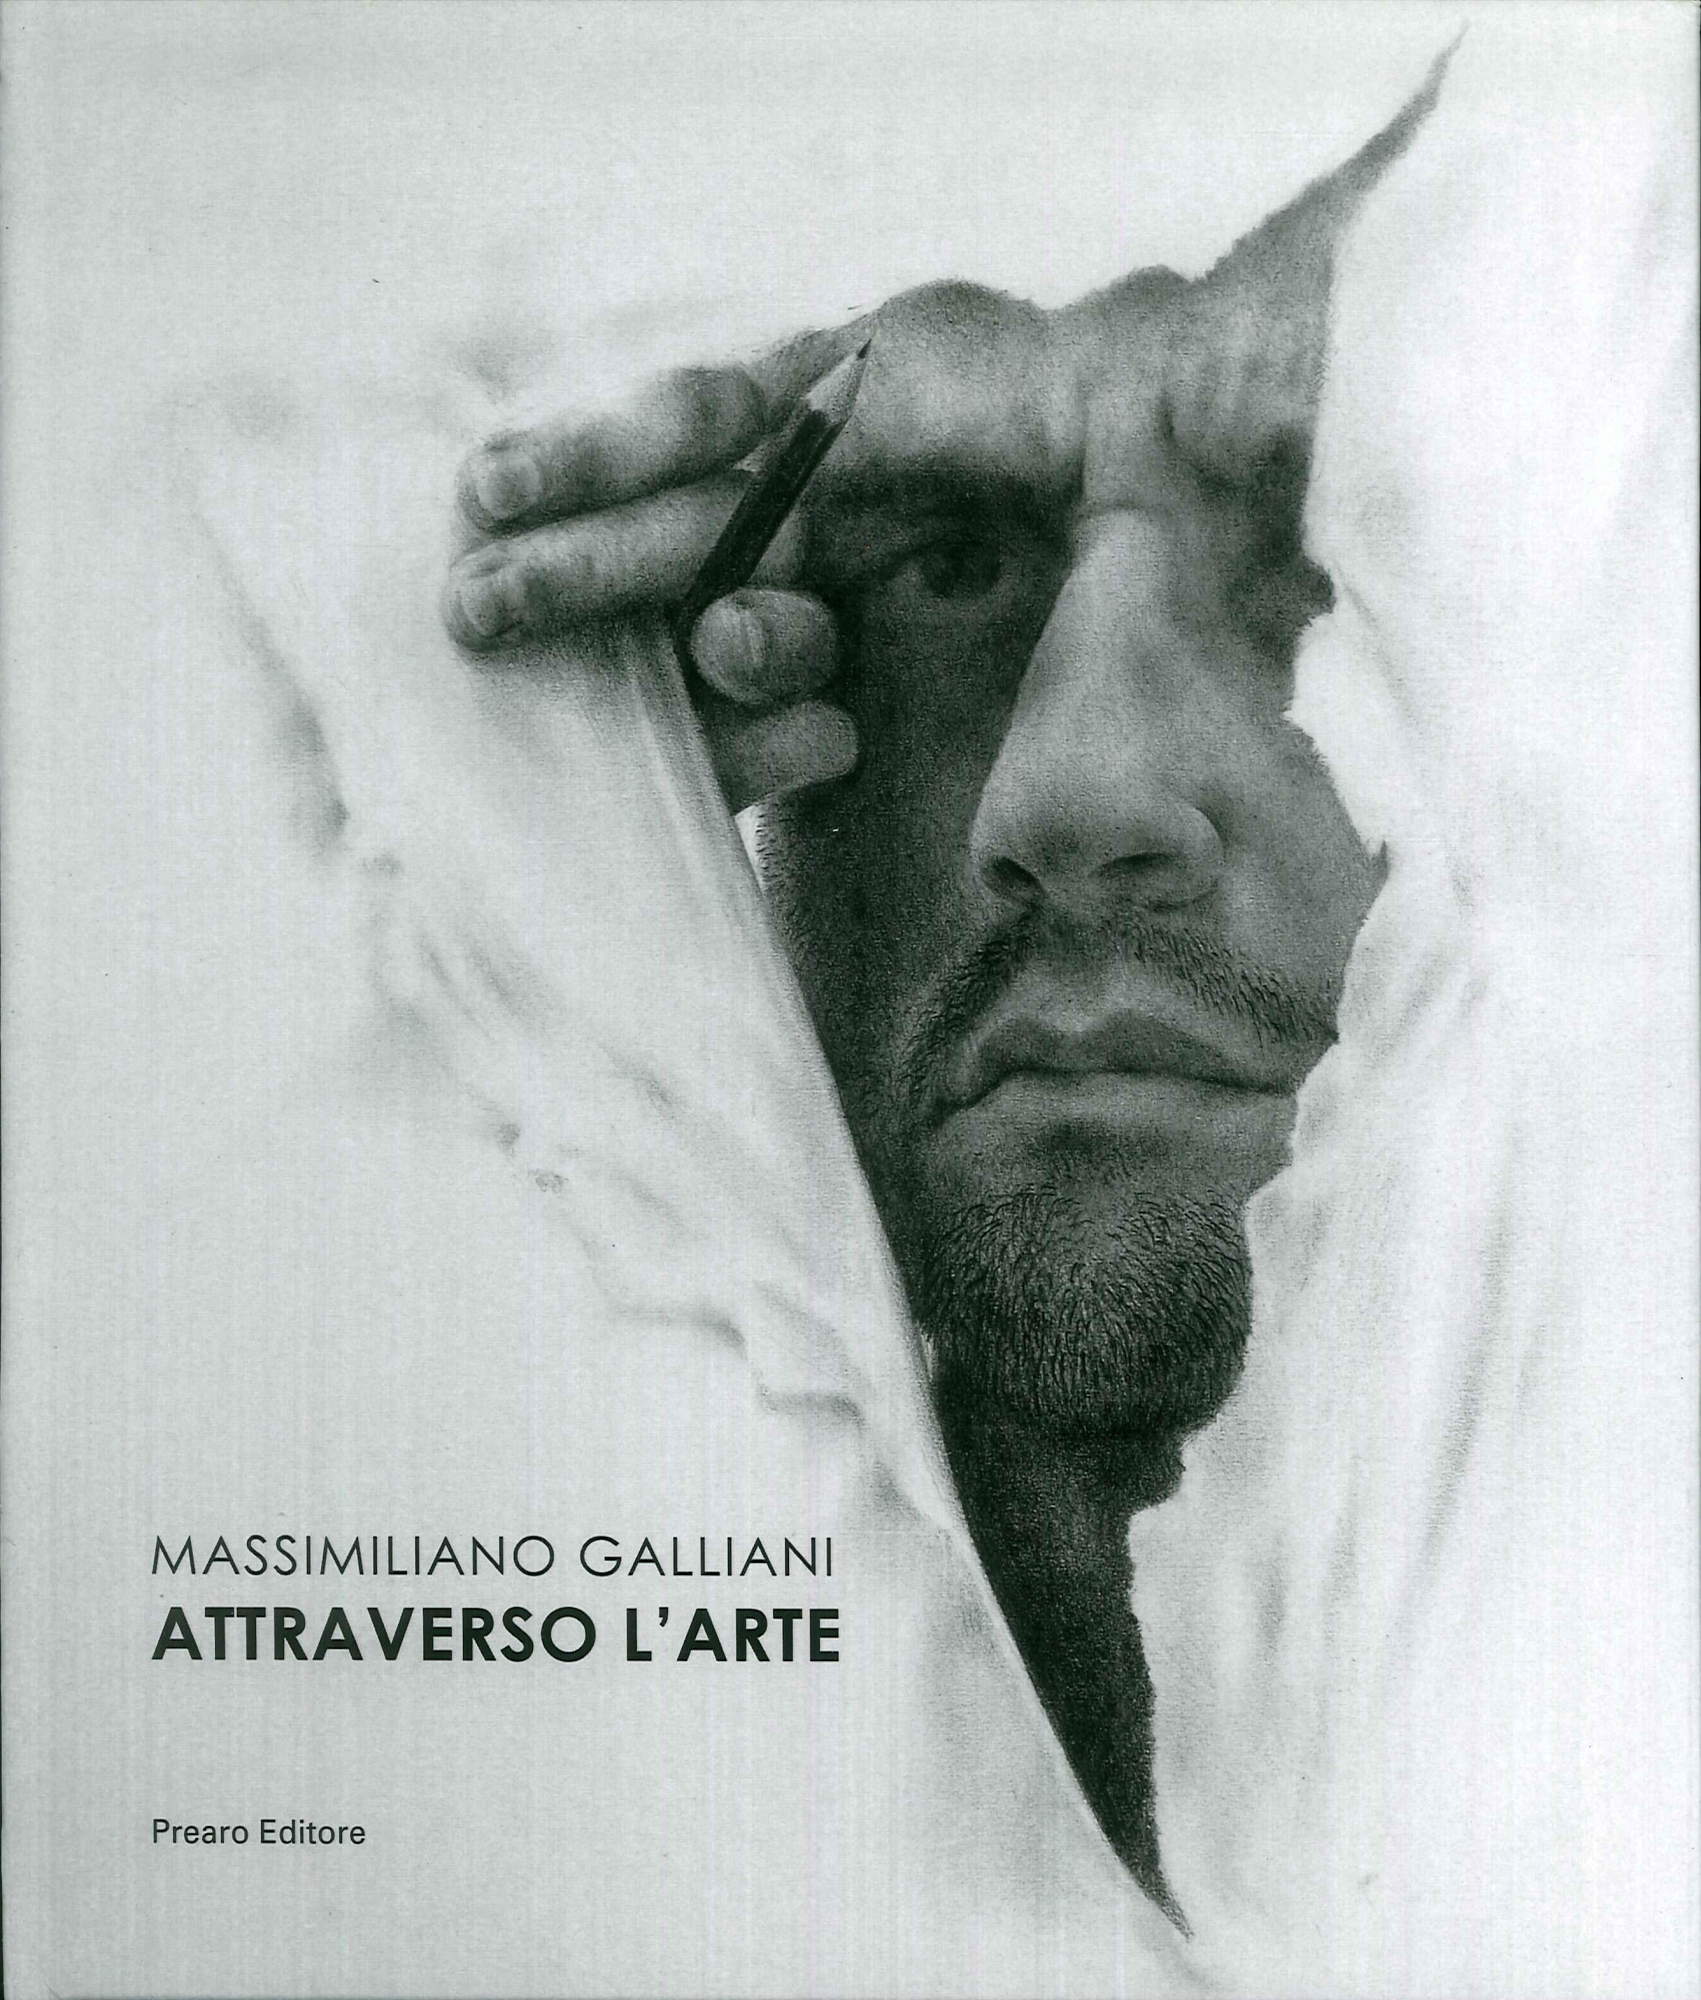 Libri Vera Agosti - Massimiliano Galliani. Ediz. Italiana E Inglese NUOVO SIGILLATO, EDIZIONE DEL 17/12/2019 SUBITO DISPONIBILE